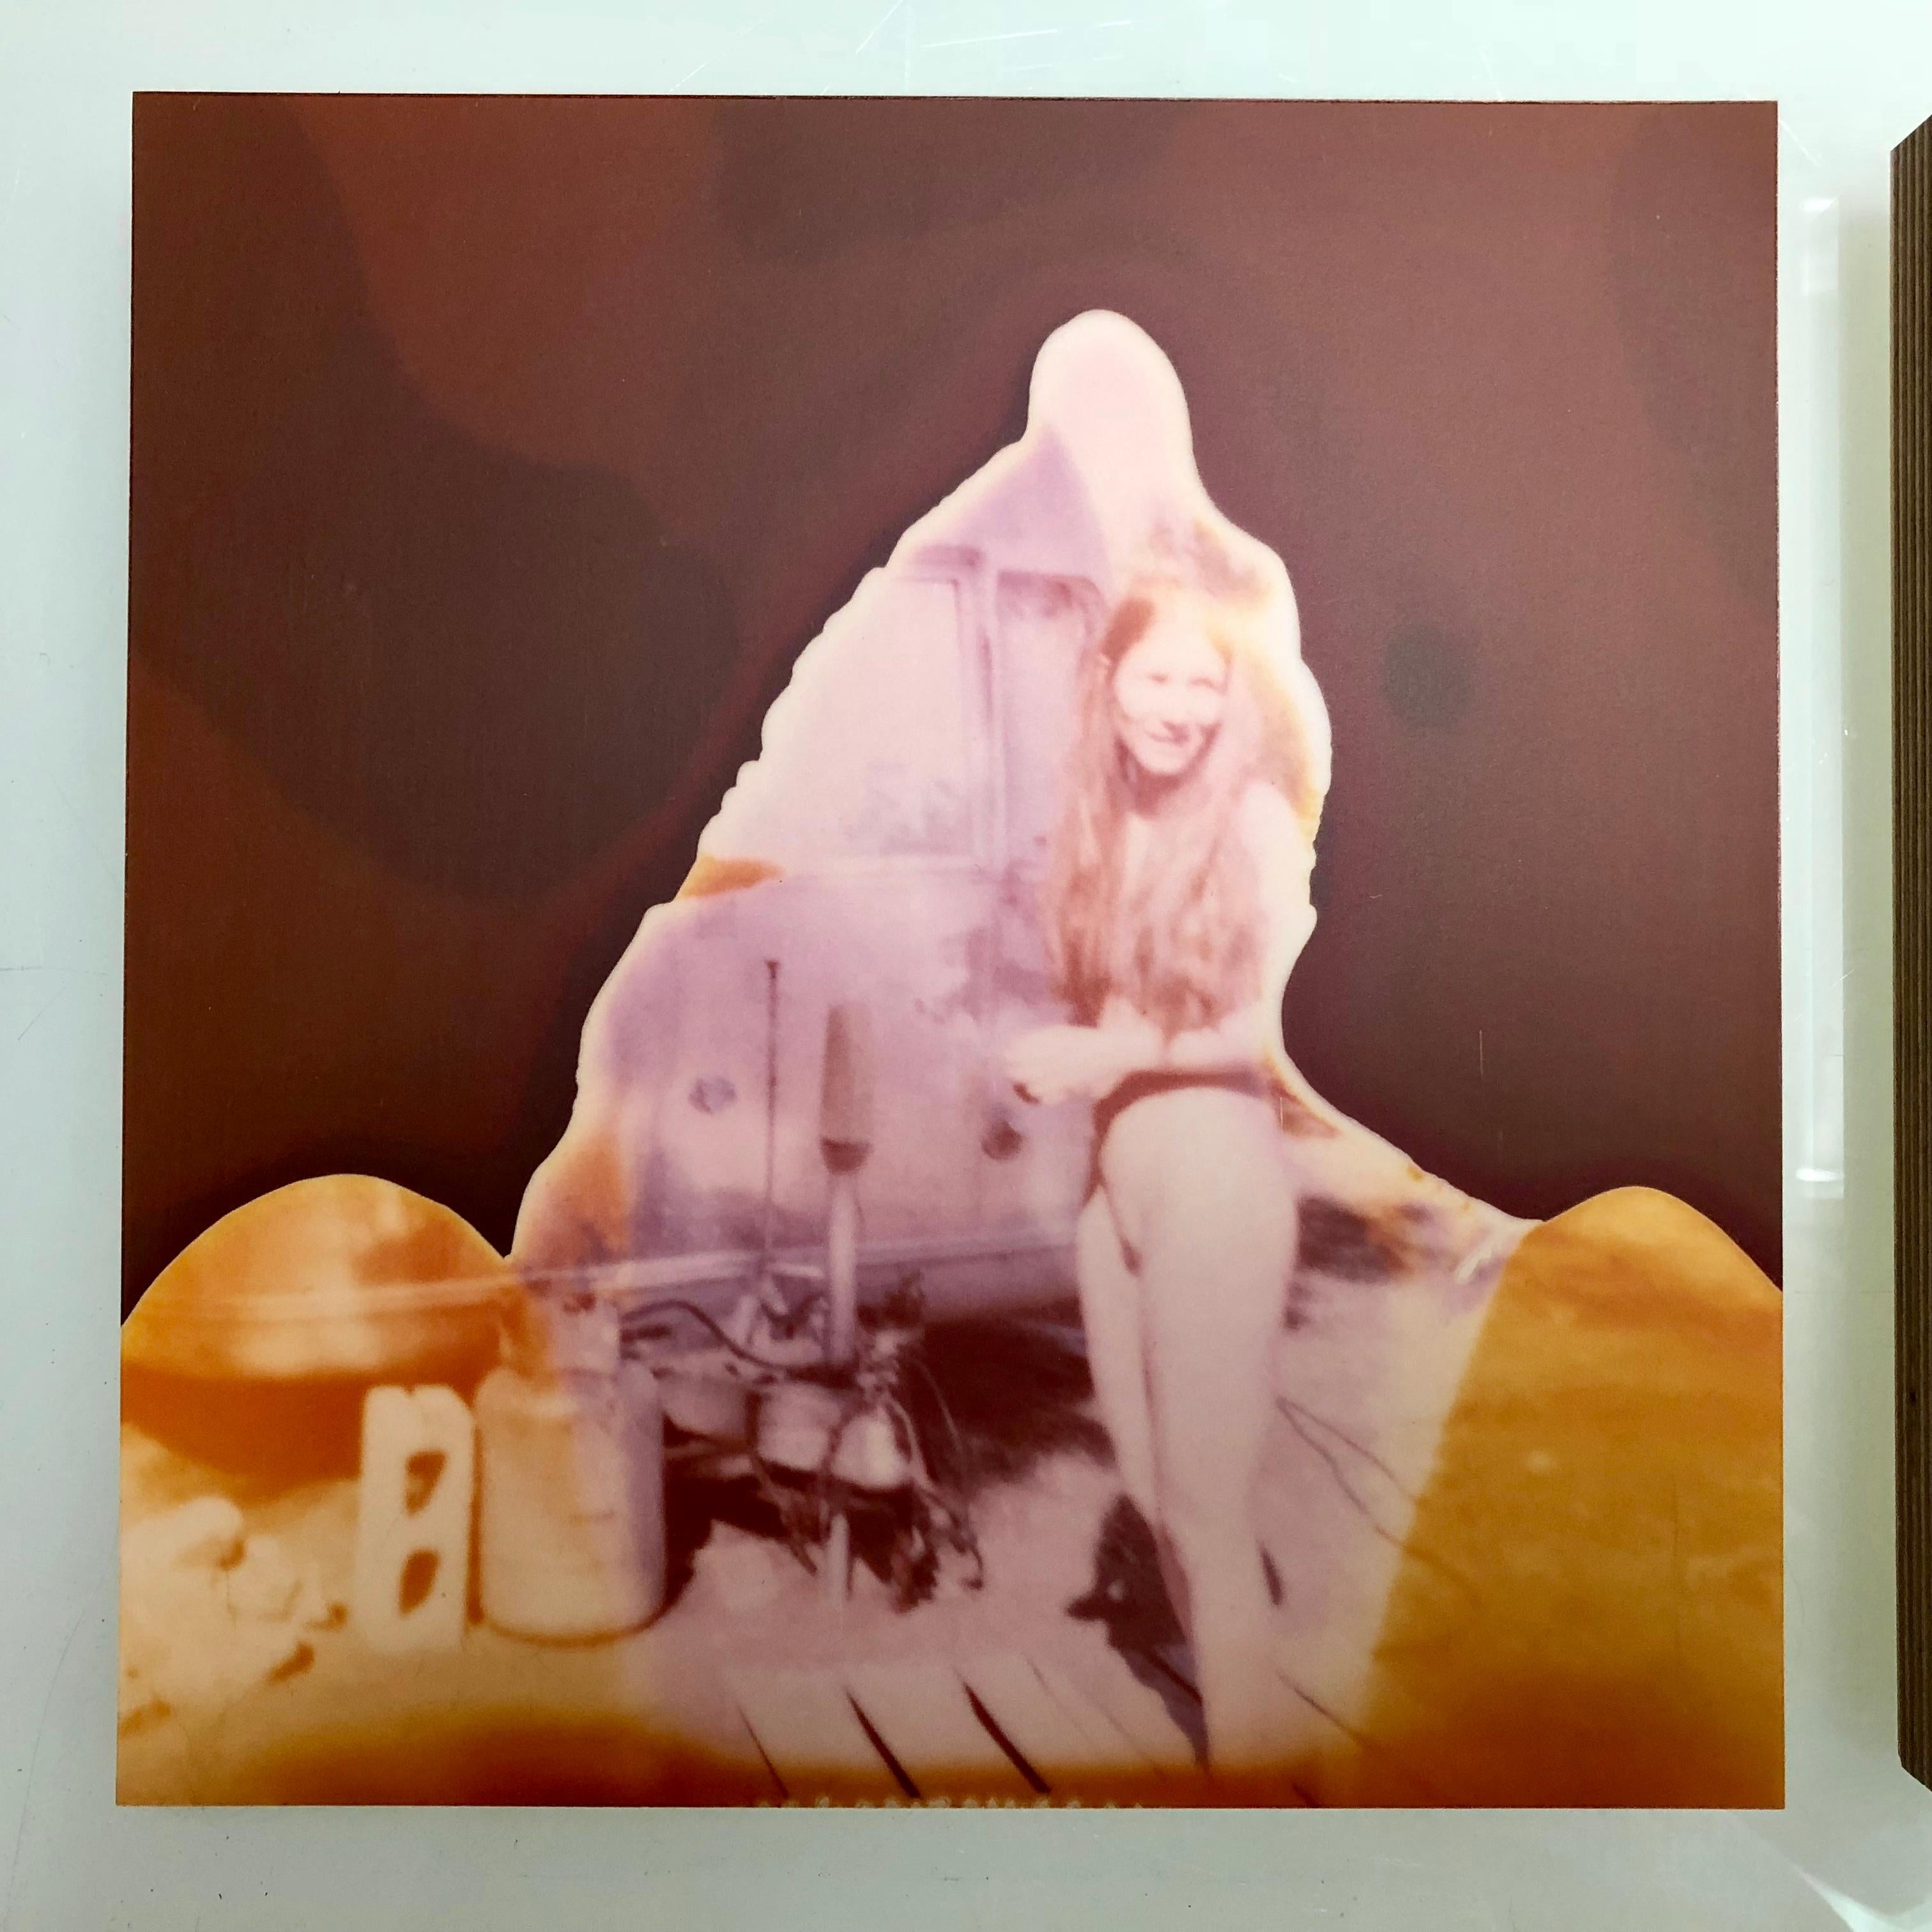 Vor dem Trailer (Sidewinder) - 2005
Diptychon

25x24cm pro Stück, installiert 25x55cm, 
Auflage von 5, 
analoger C-Print, von der Künstlerin handgedruckt auf Fuji Crystal archive Papier, 
basierend auf den Polaroids, 
auf Holz mit mattem UV-Schutz